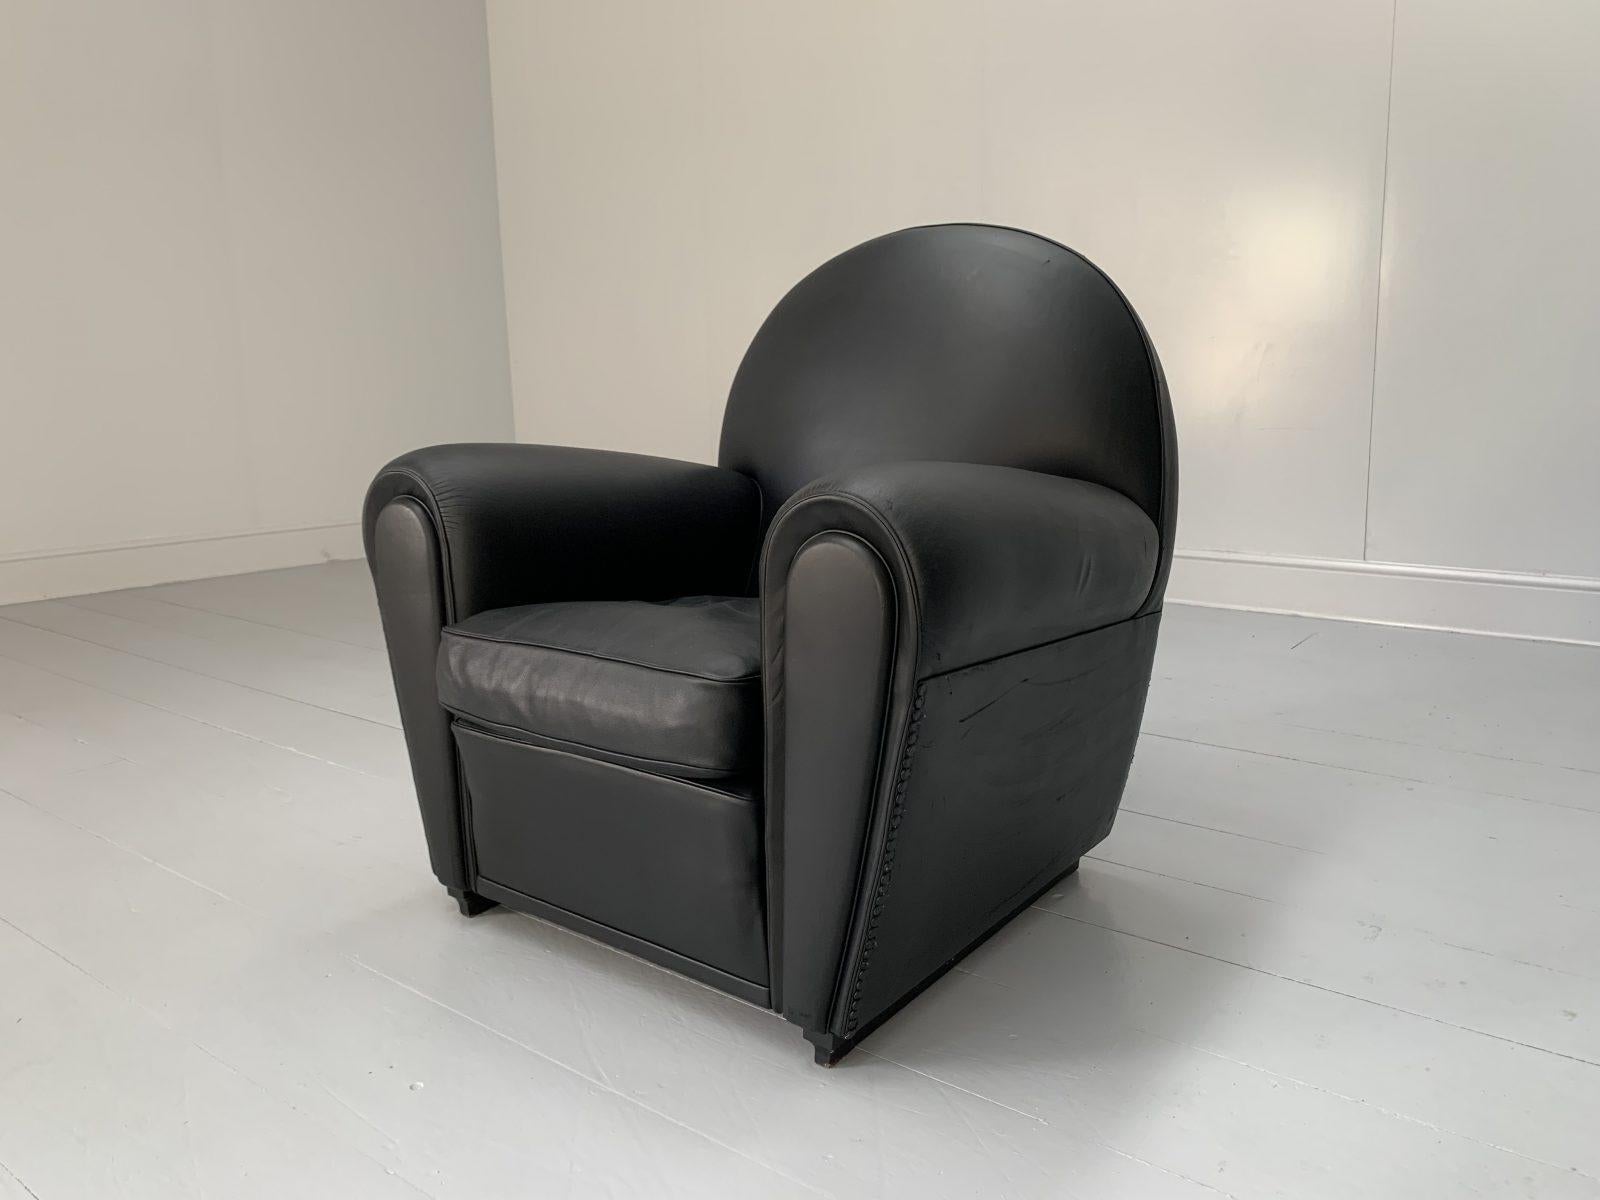 Pair of Poltrona Frau “Vanity Fair” Armchairs – In “Pelle Frau” Black Leather For Sale 7